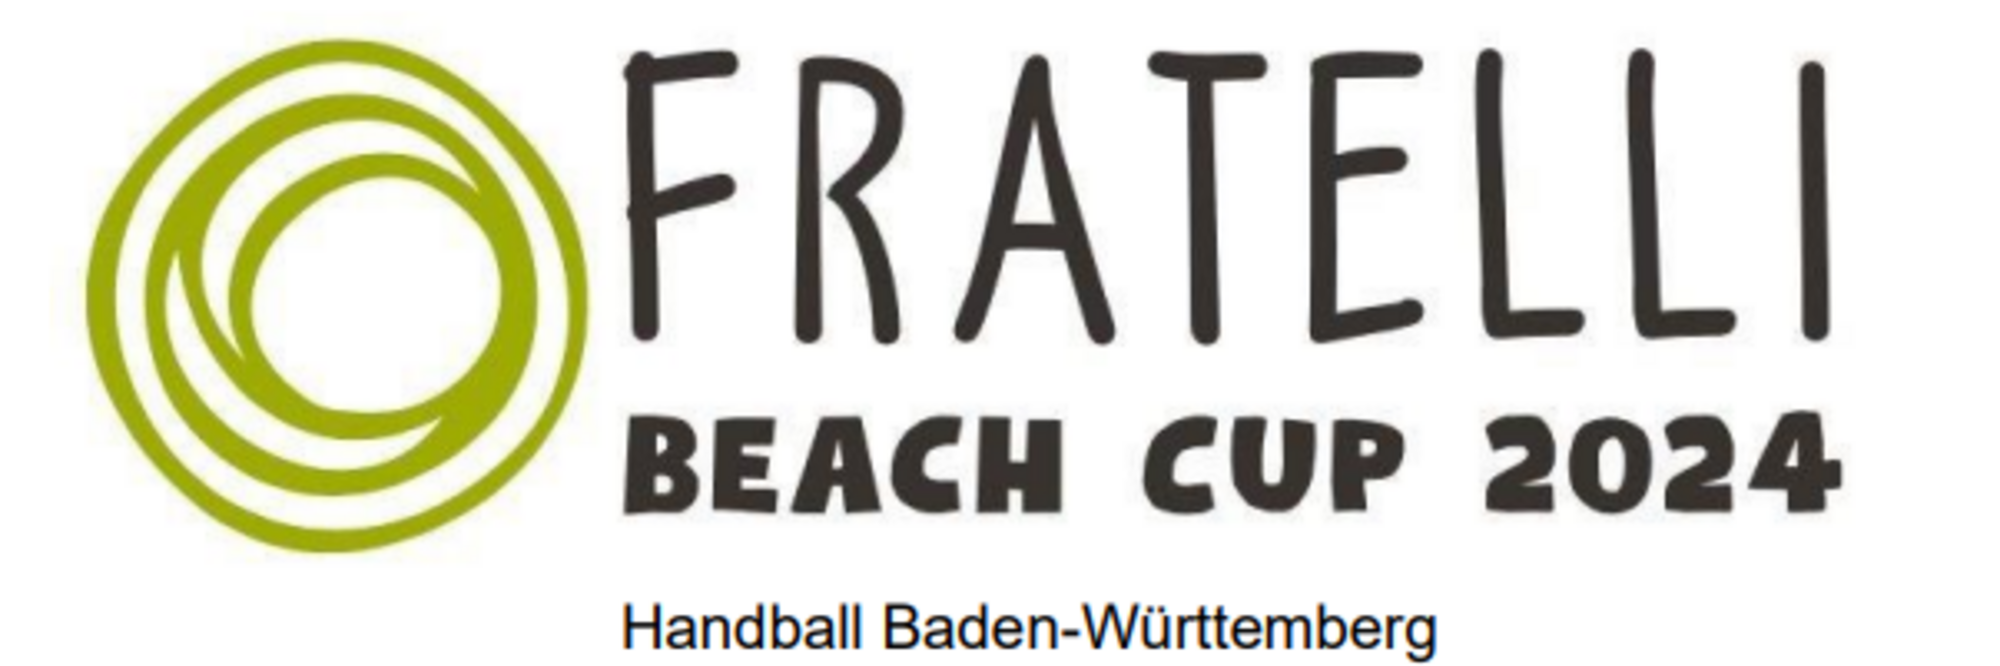 Fratelli Beach Cup 2024